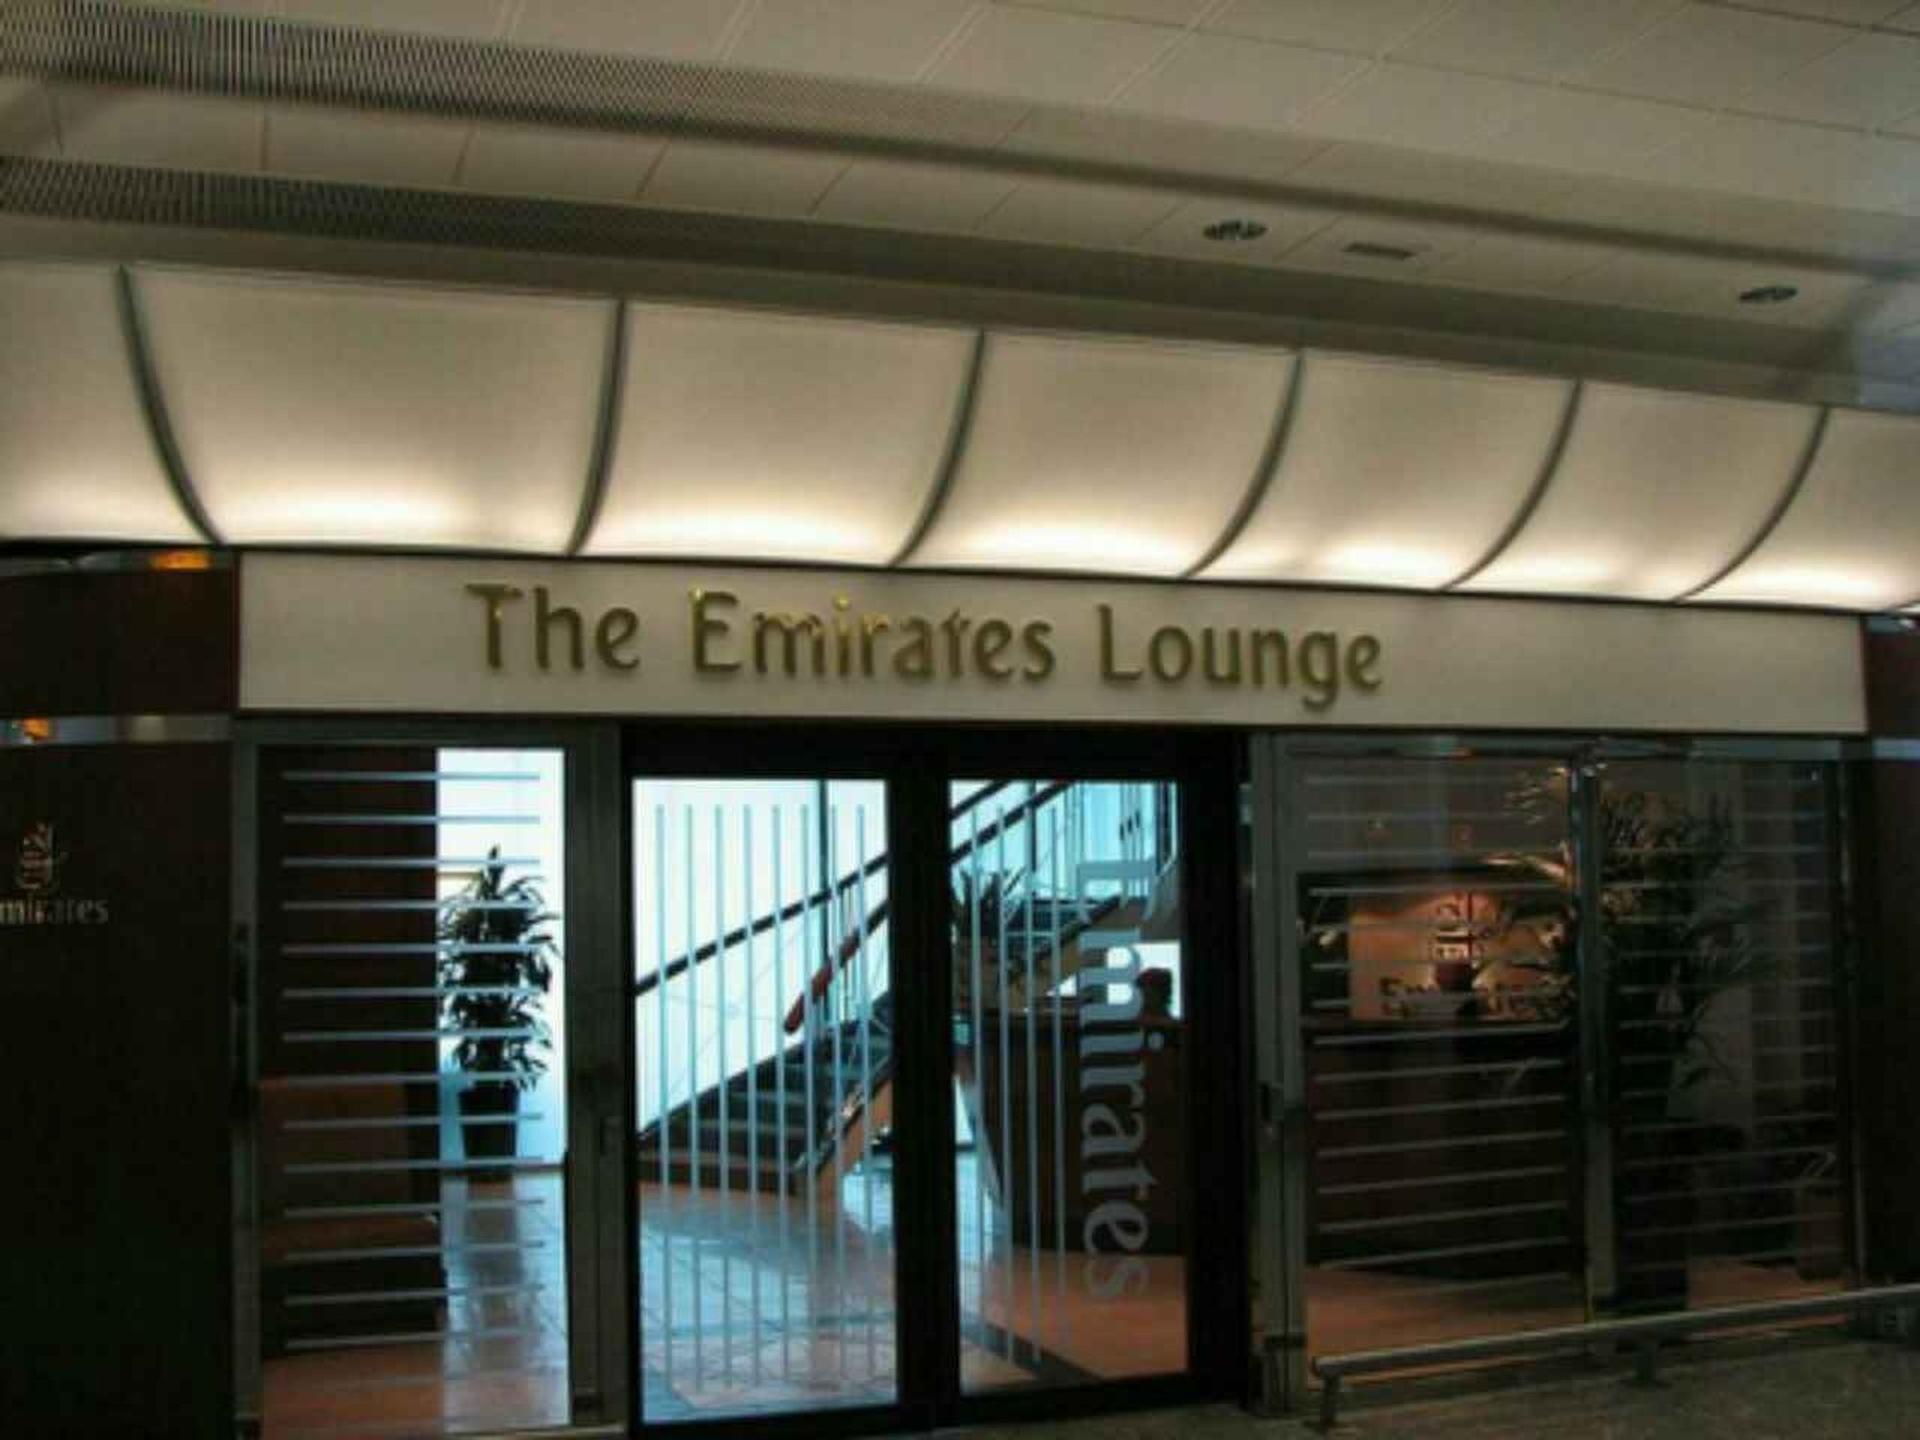 The Emirates Lounge image 8 of 10